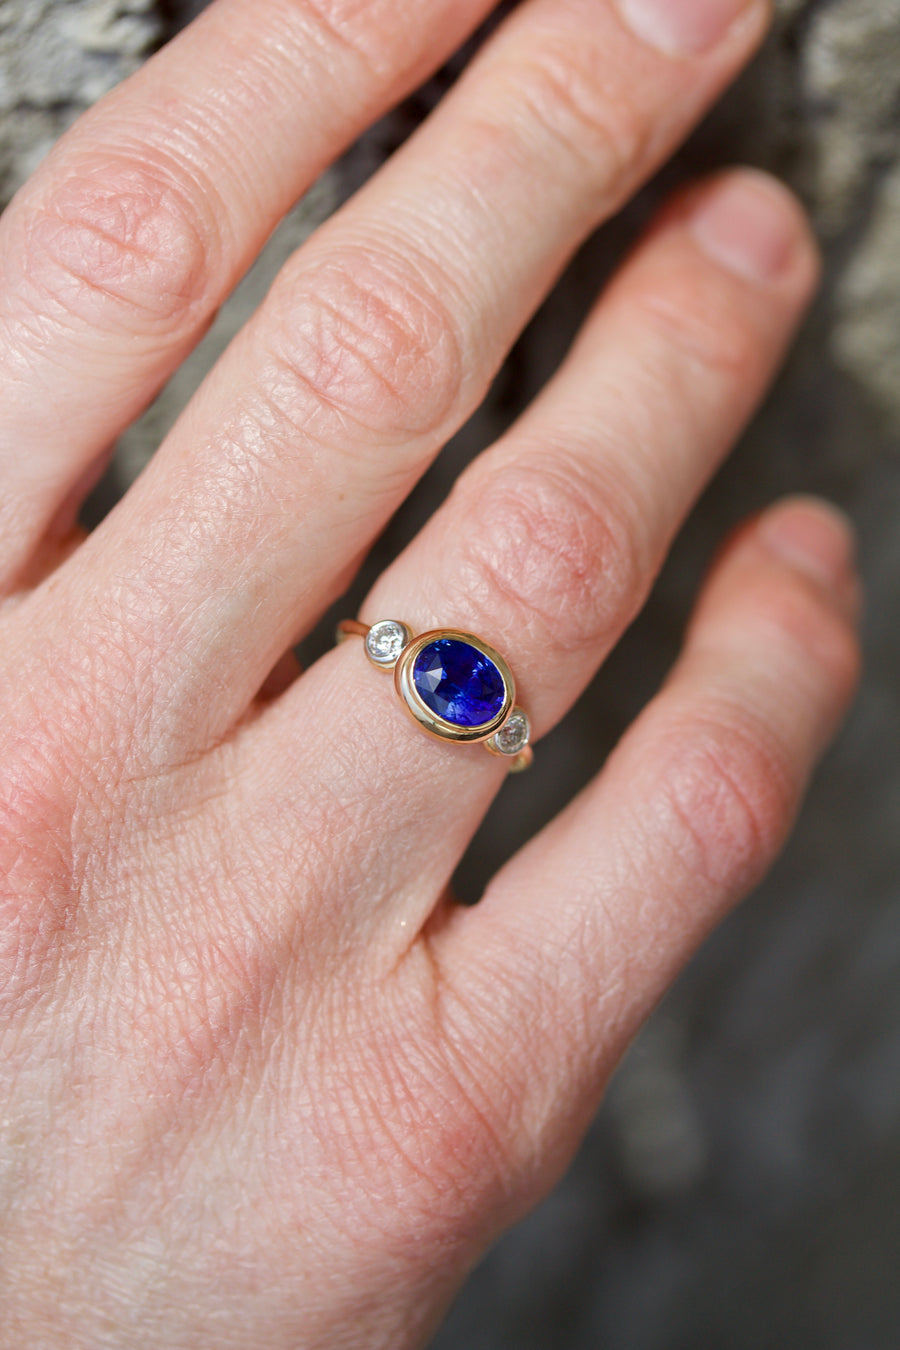 Faceted Blue Sapphire & European Cut Diamond Ring